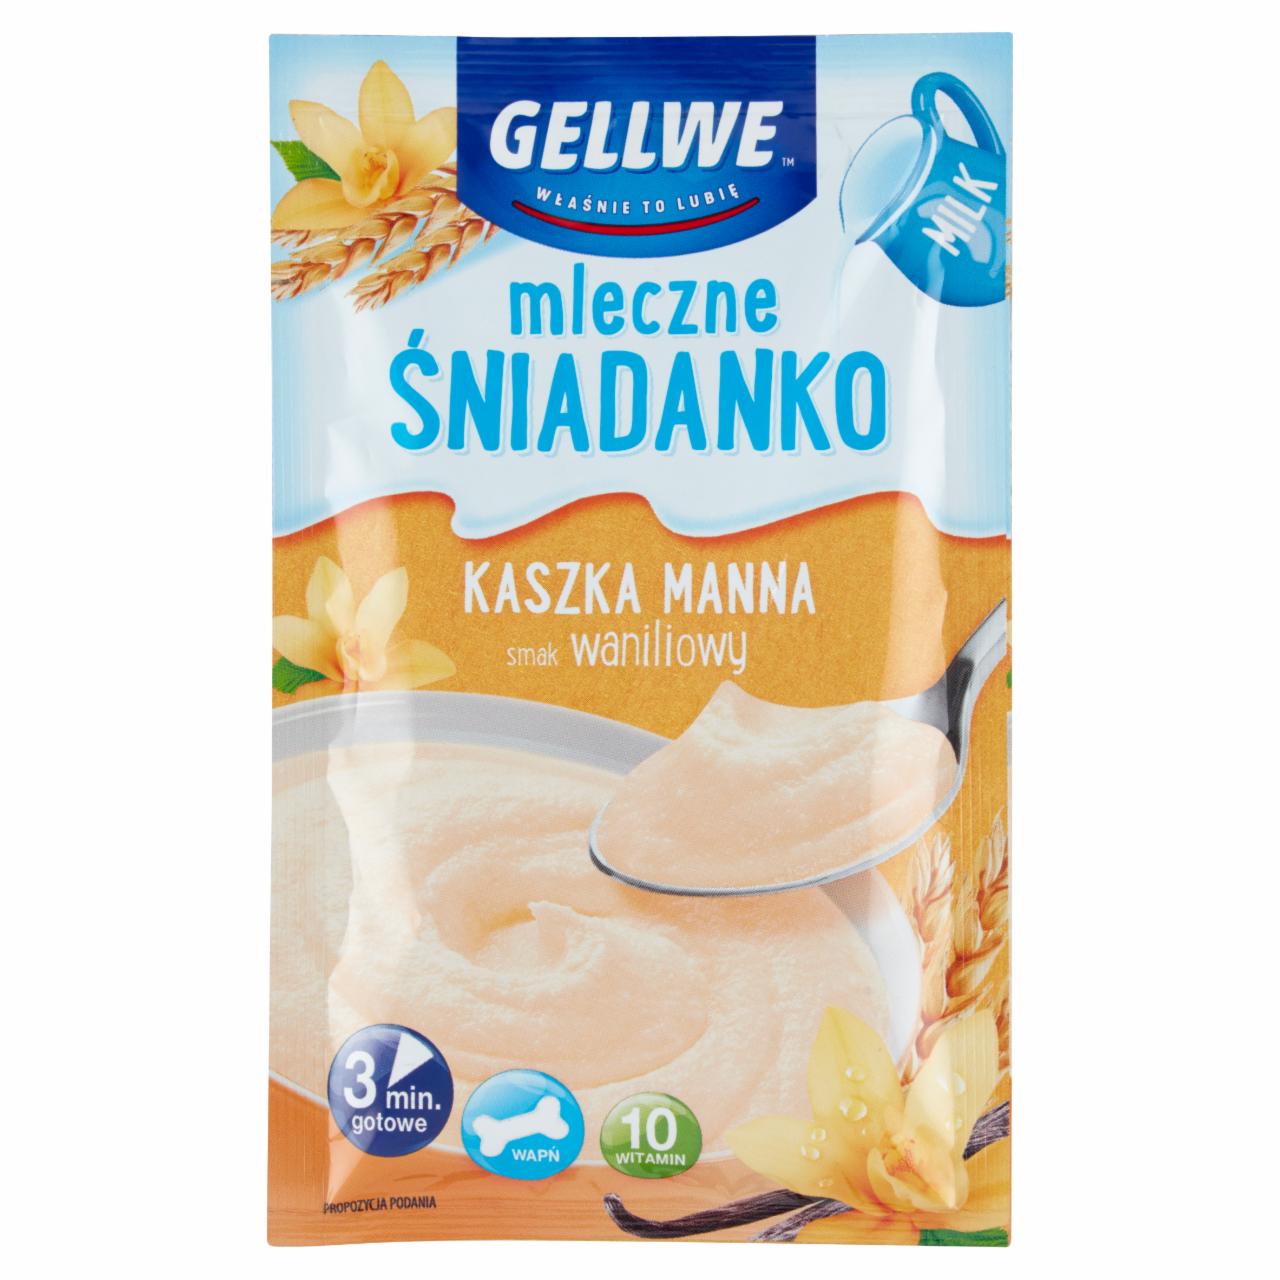 Zdjęcia - Mleczne Śniadanko Kaszka manna smak waniliowy 50 g Gellwe